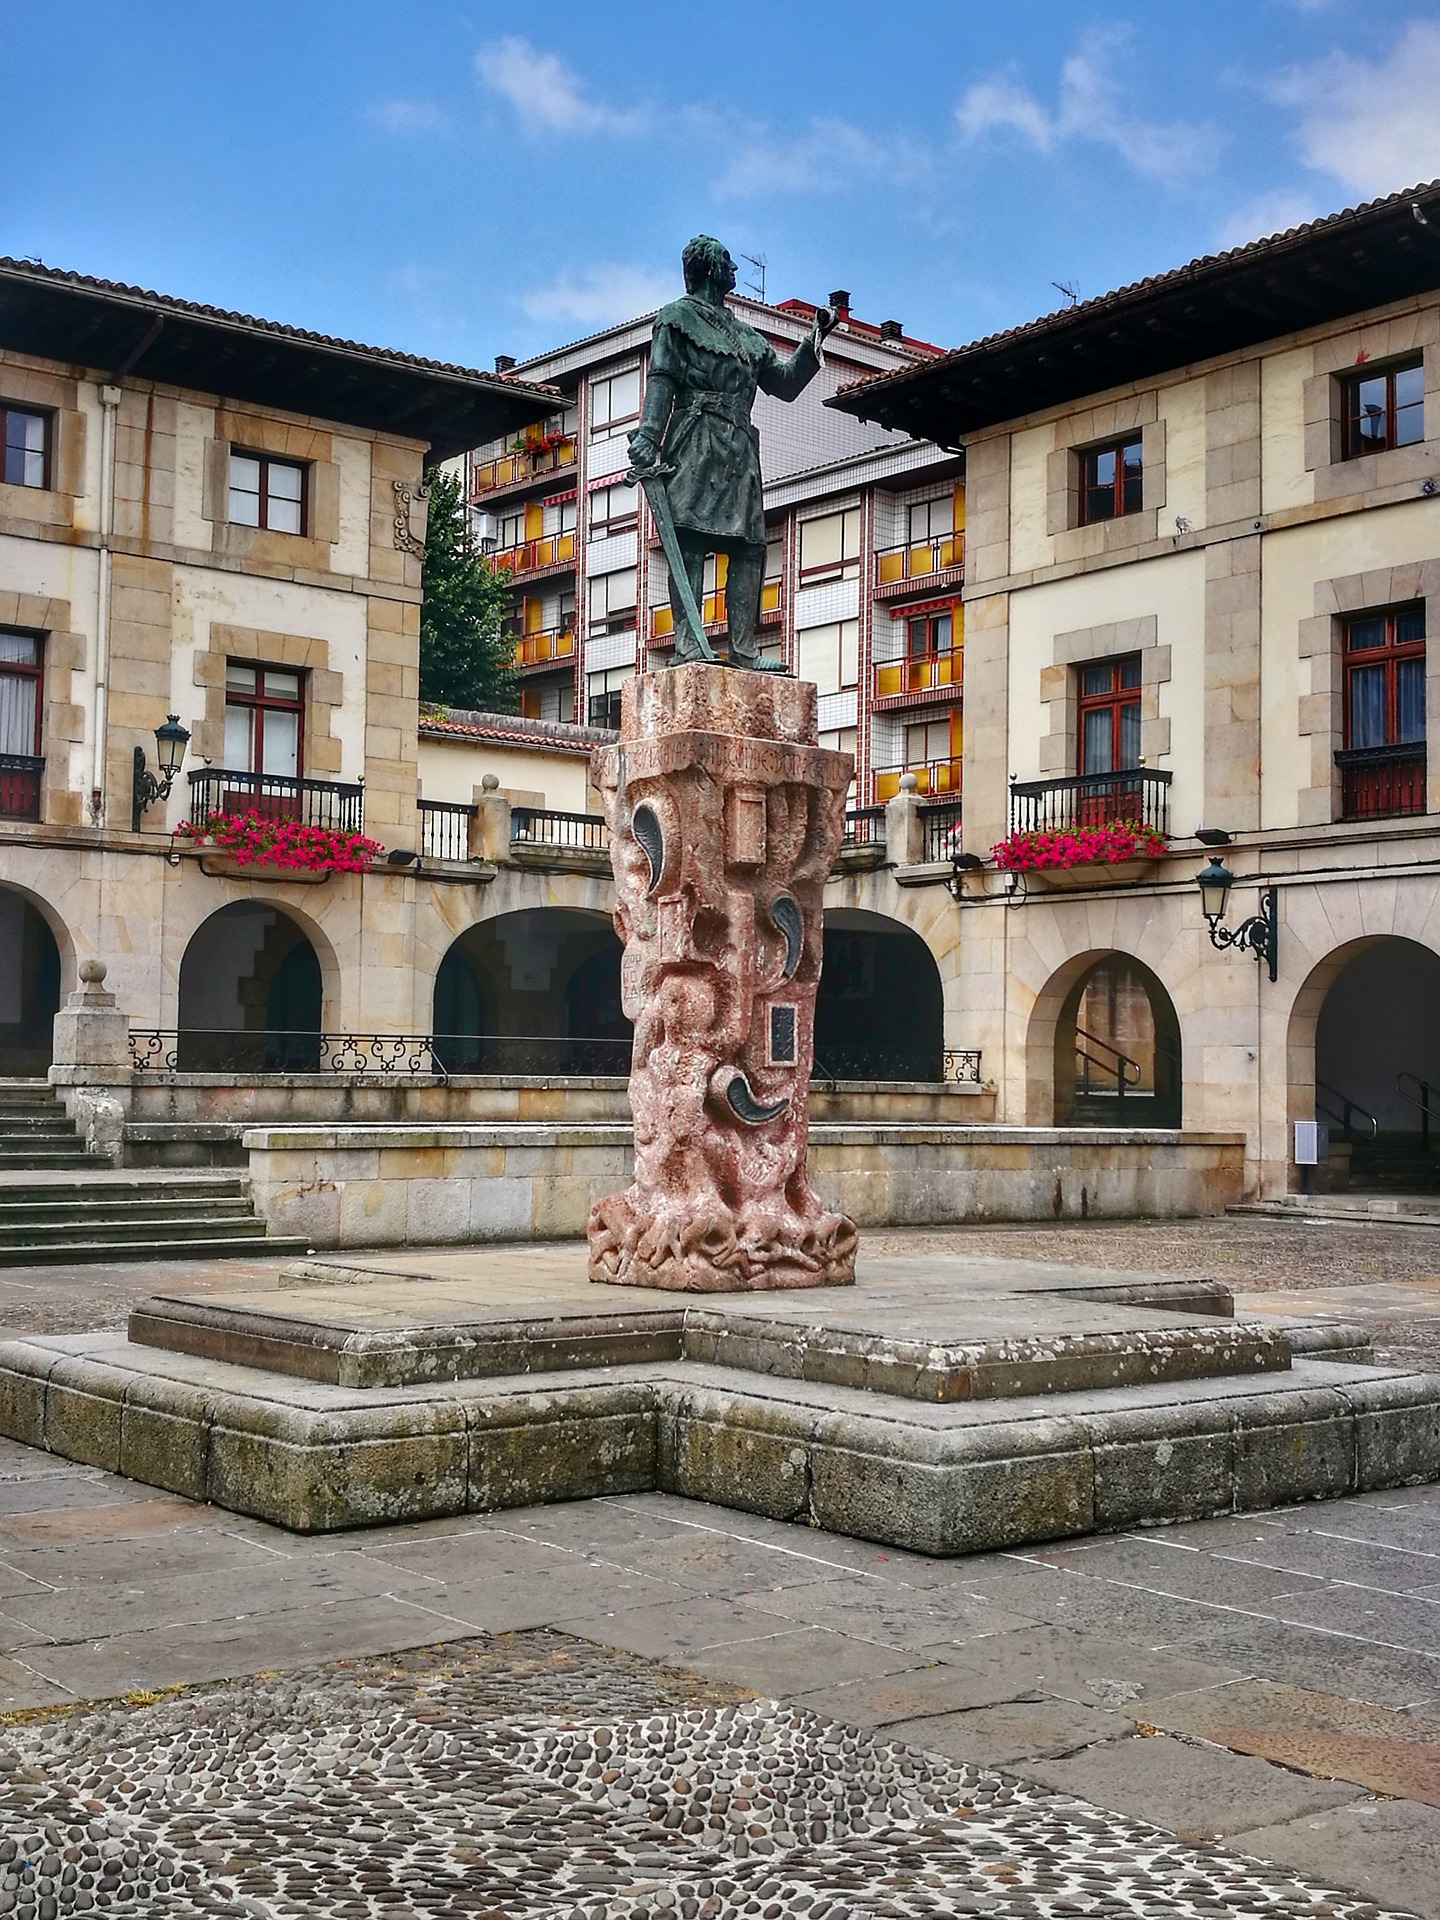 Spania. Gernika. Monumentet til Tello de Castilla - grunnleggeren av Gernika på Foru-plassen. Foto